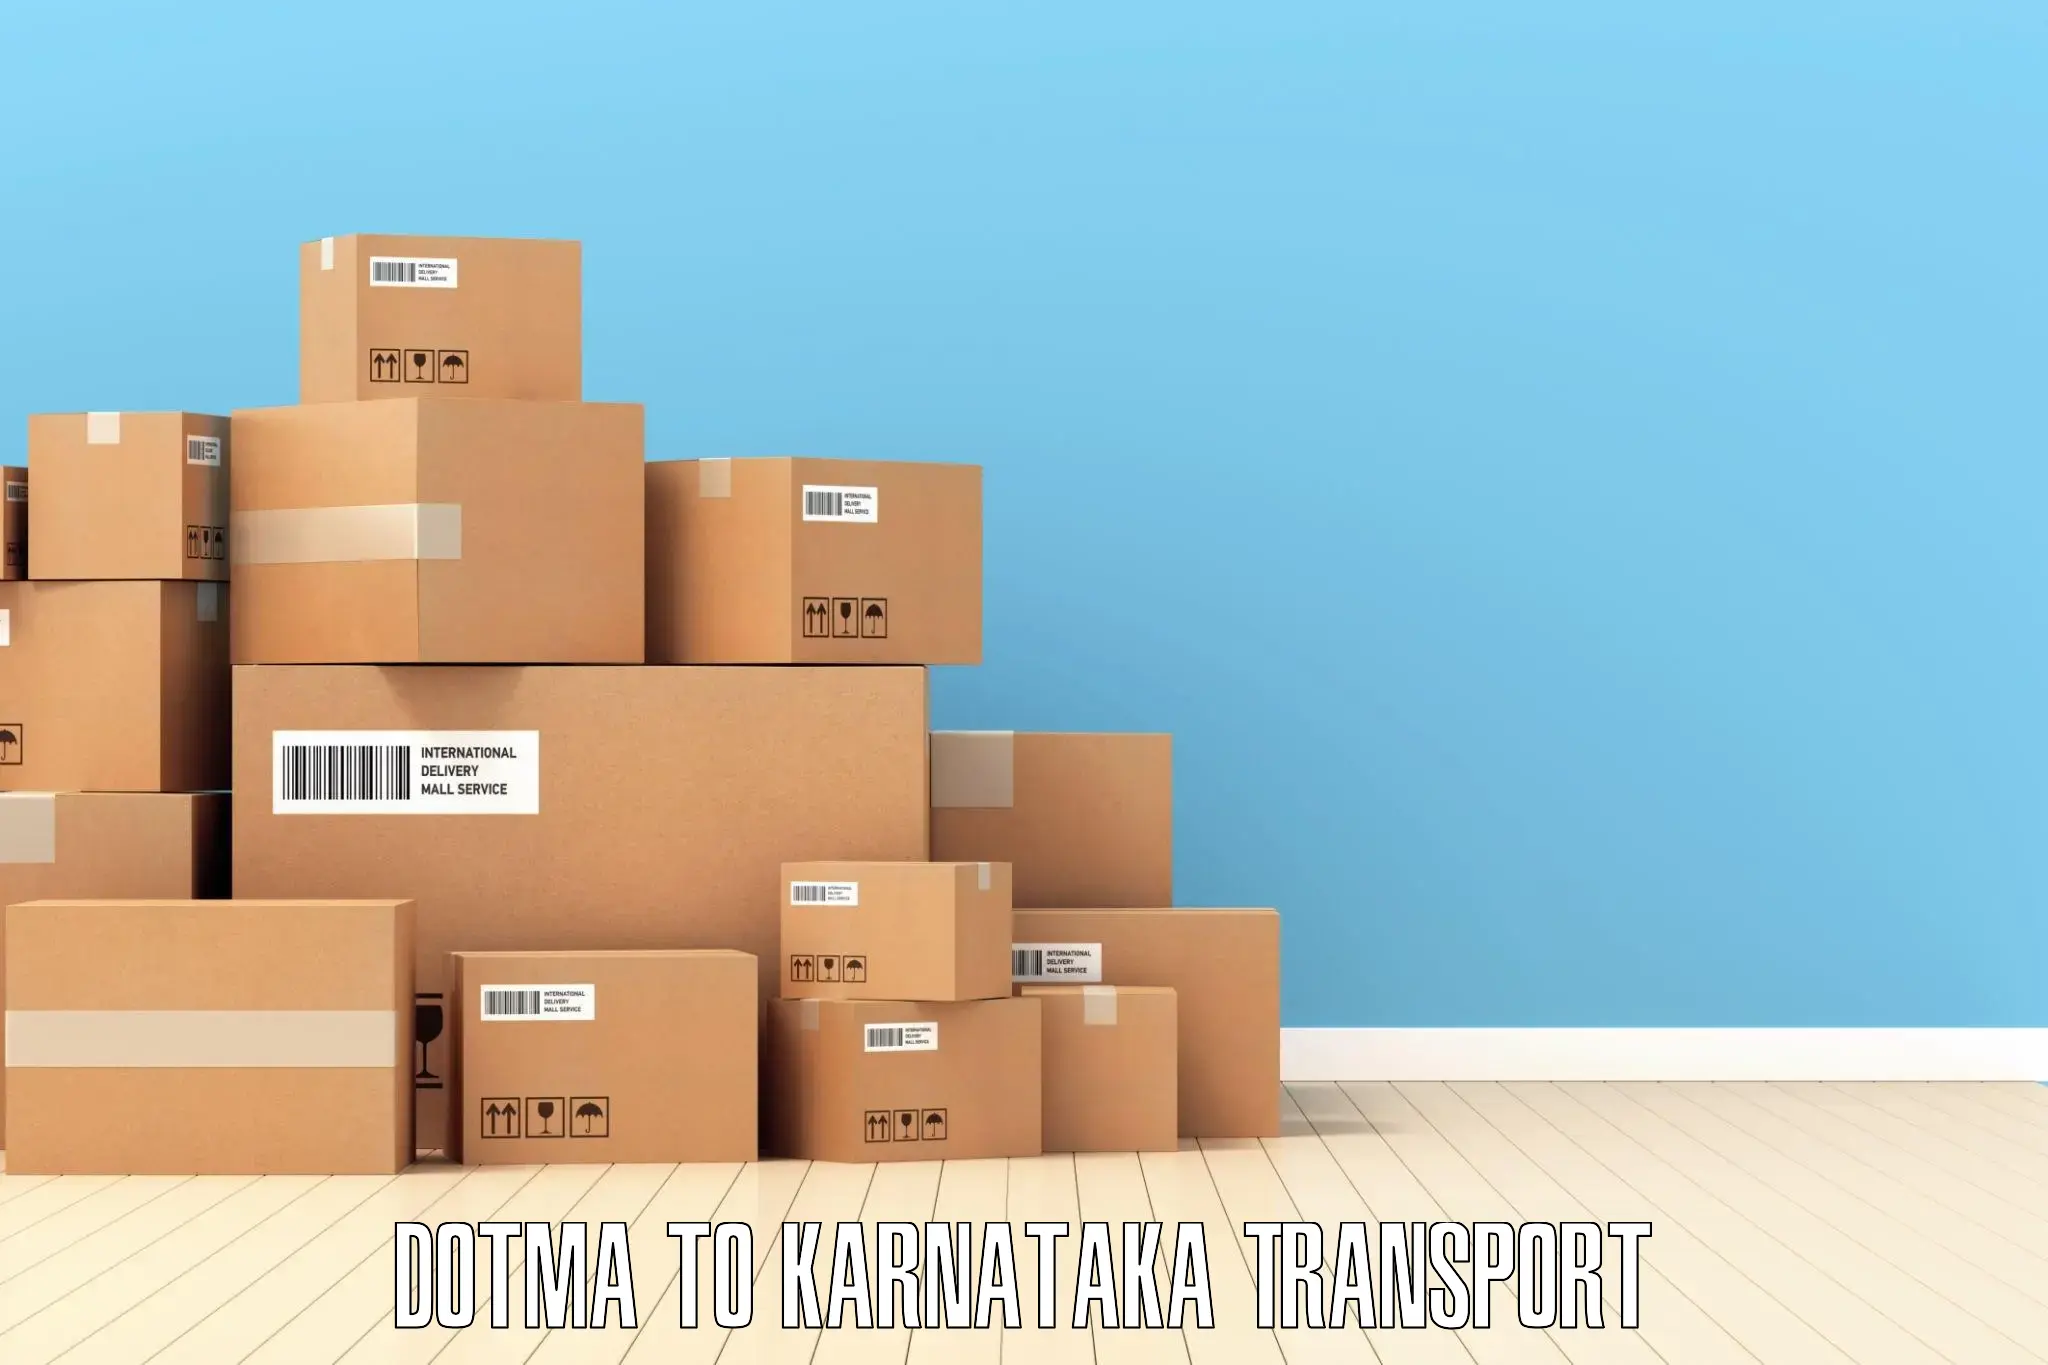 Bike shipping service Dotma to Karkala